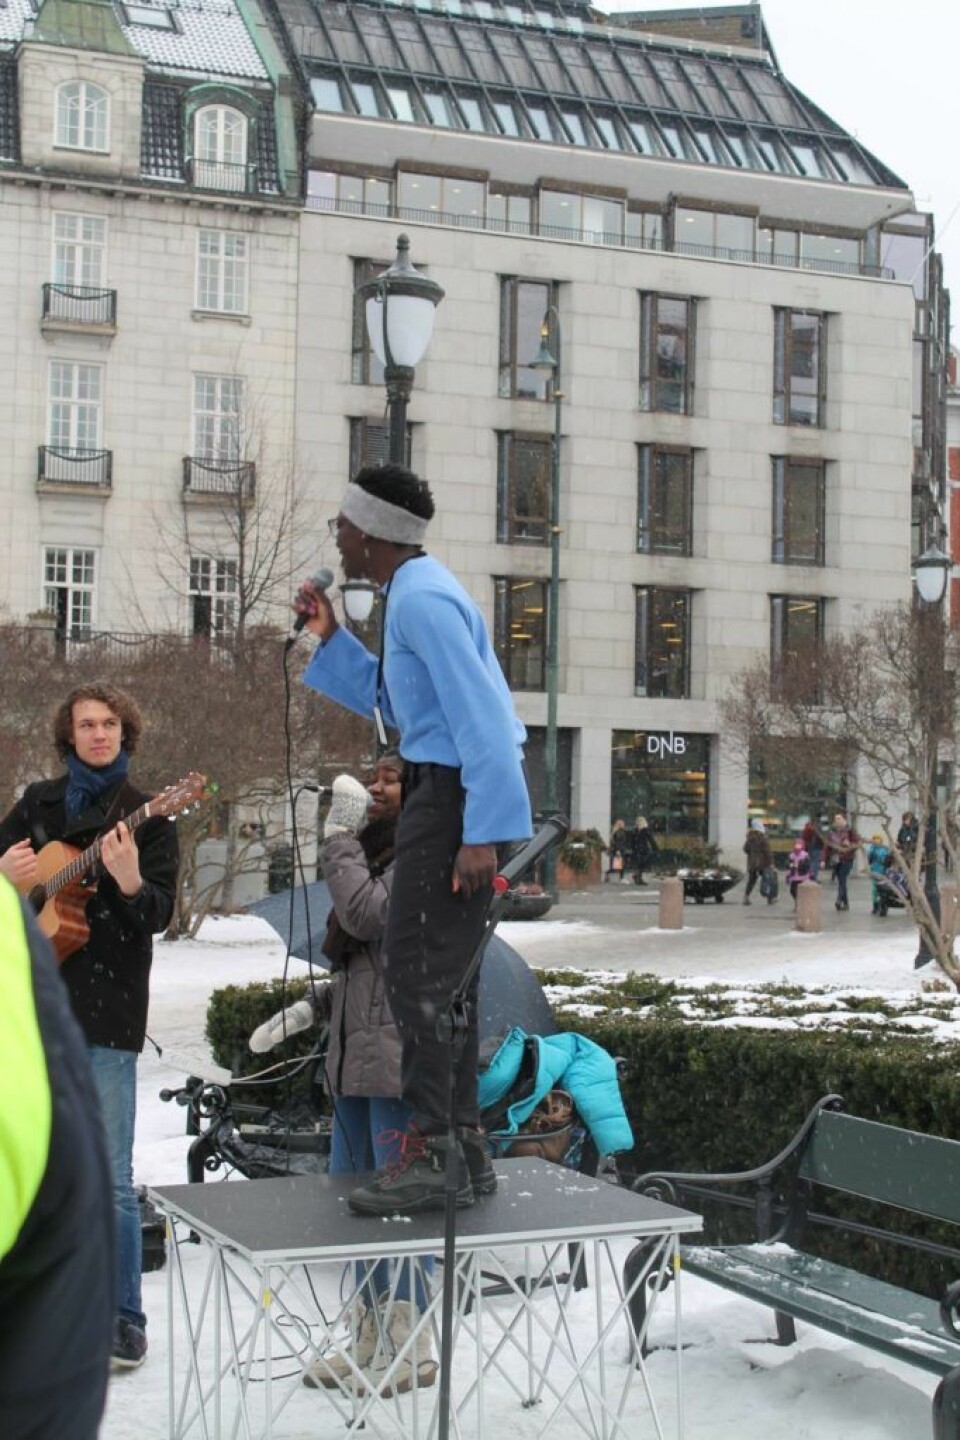 Adama Janlo både sang og holdt appell under demonstrasjonen mot etnisk profilering. Foto: Carima Heinesen